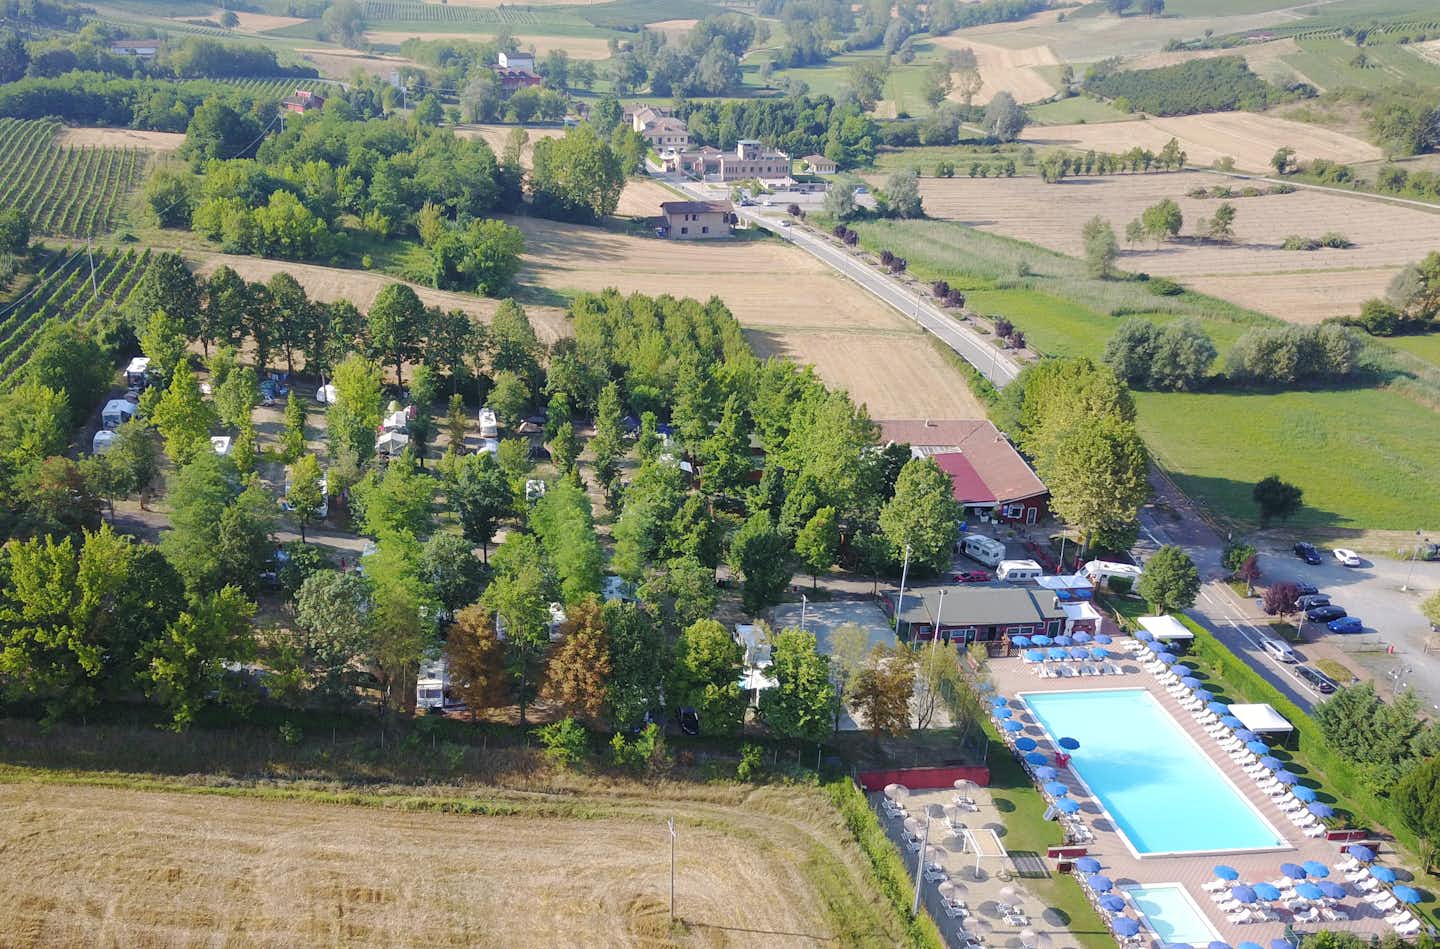 Camping Le Fonti - Vogelperspektive auf den Campingplatz mit Stellplätzen und Swimmingpools, im Hintergrund die hügelige Natur der Region Emilia-Romagna